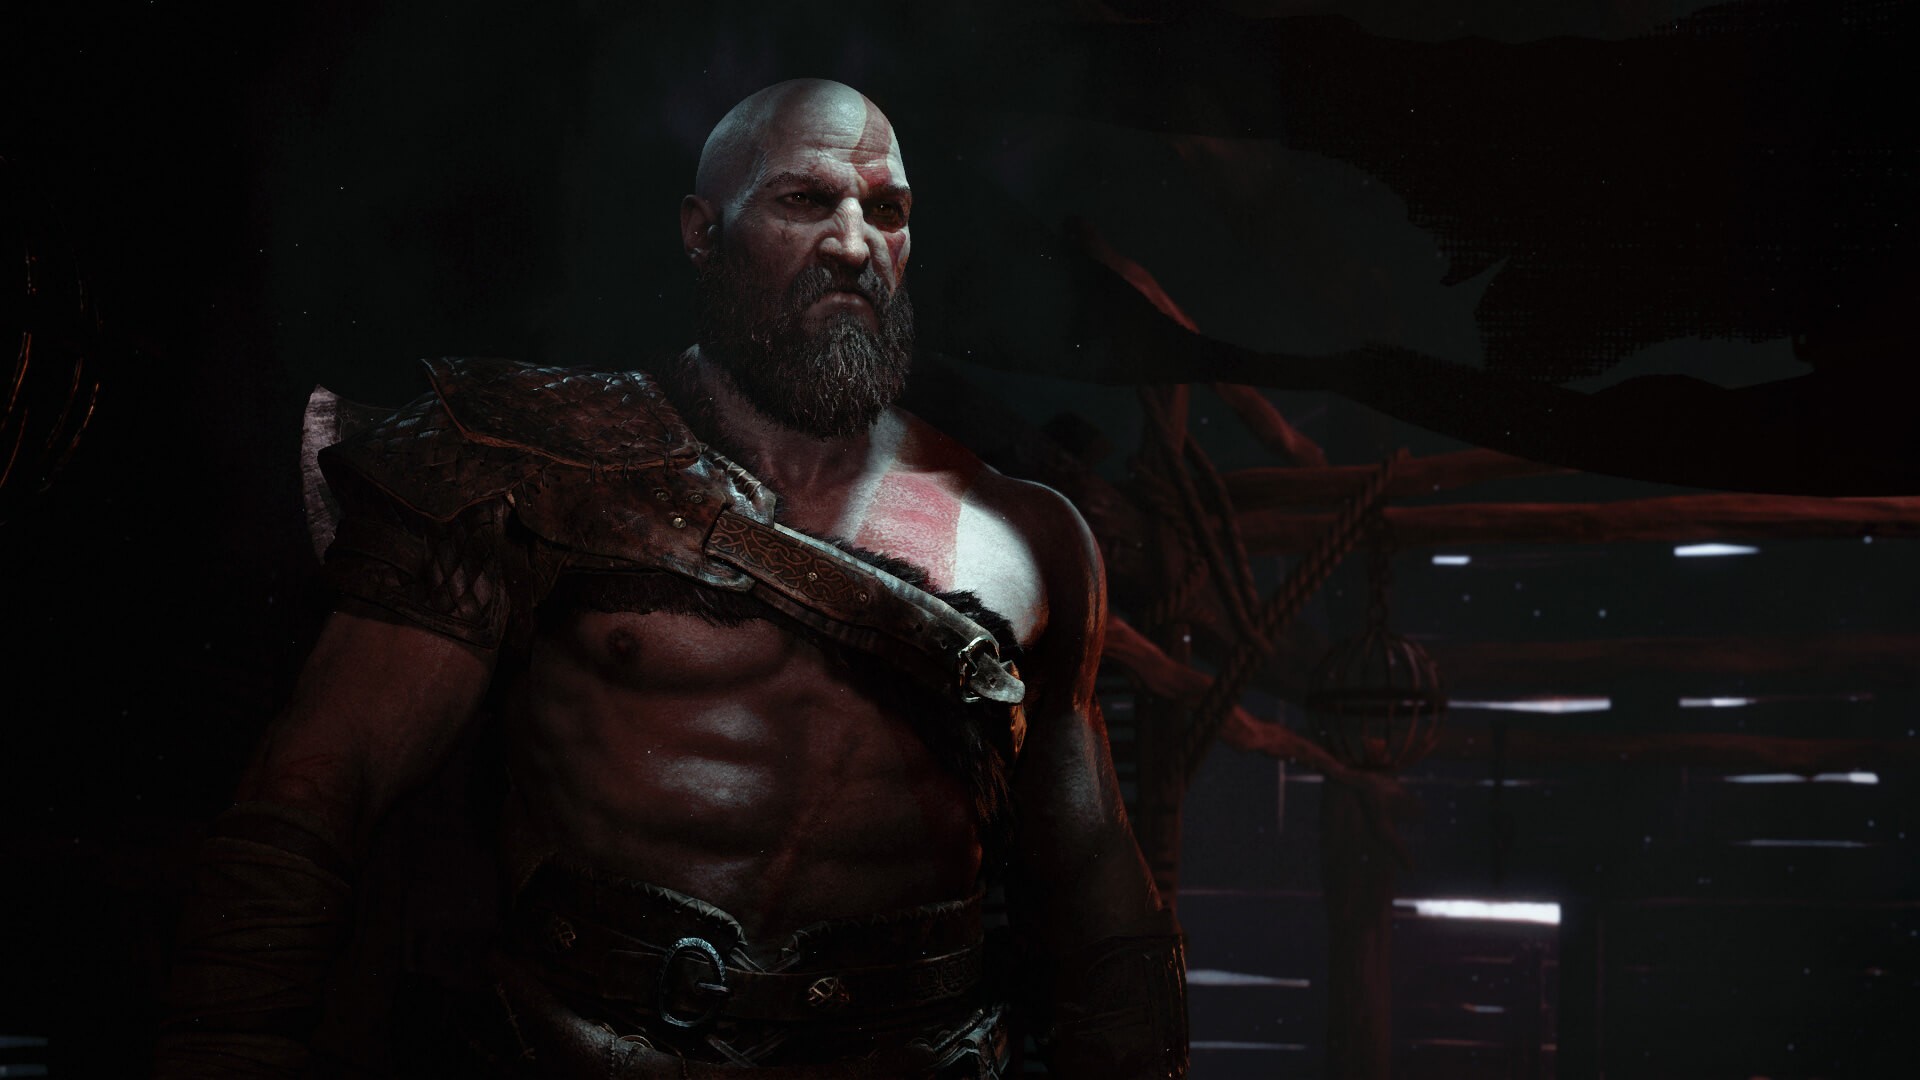 Kratos, God, God of War, Omega, Valhalla, God of war 4 Wallpaper